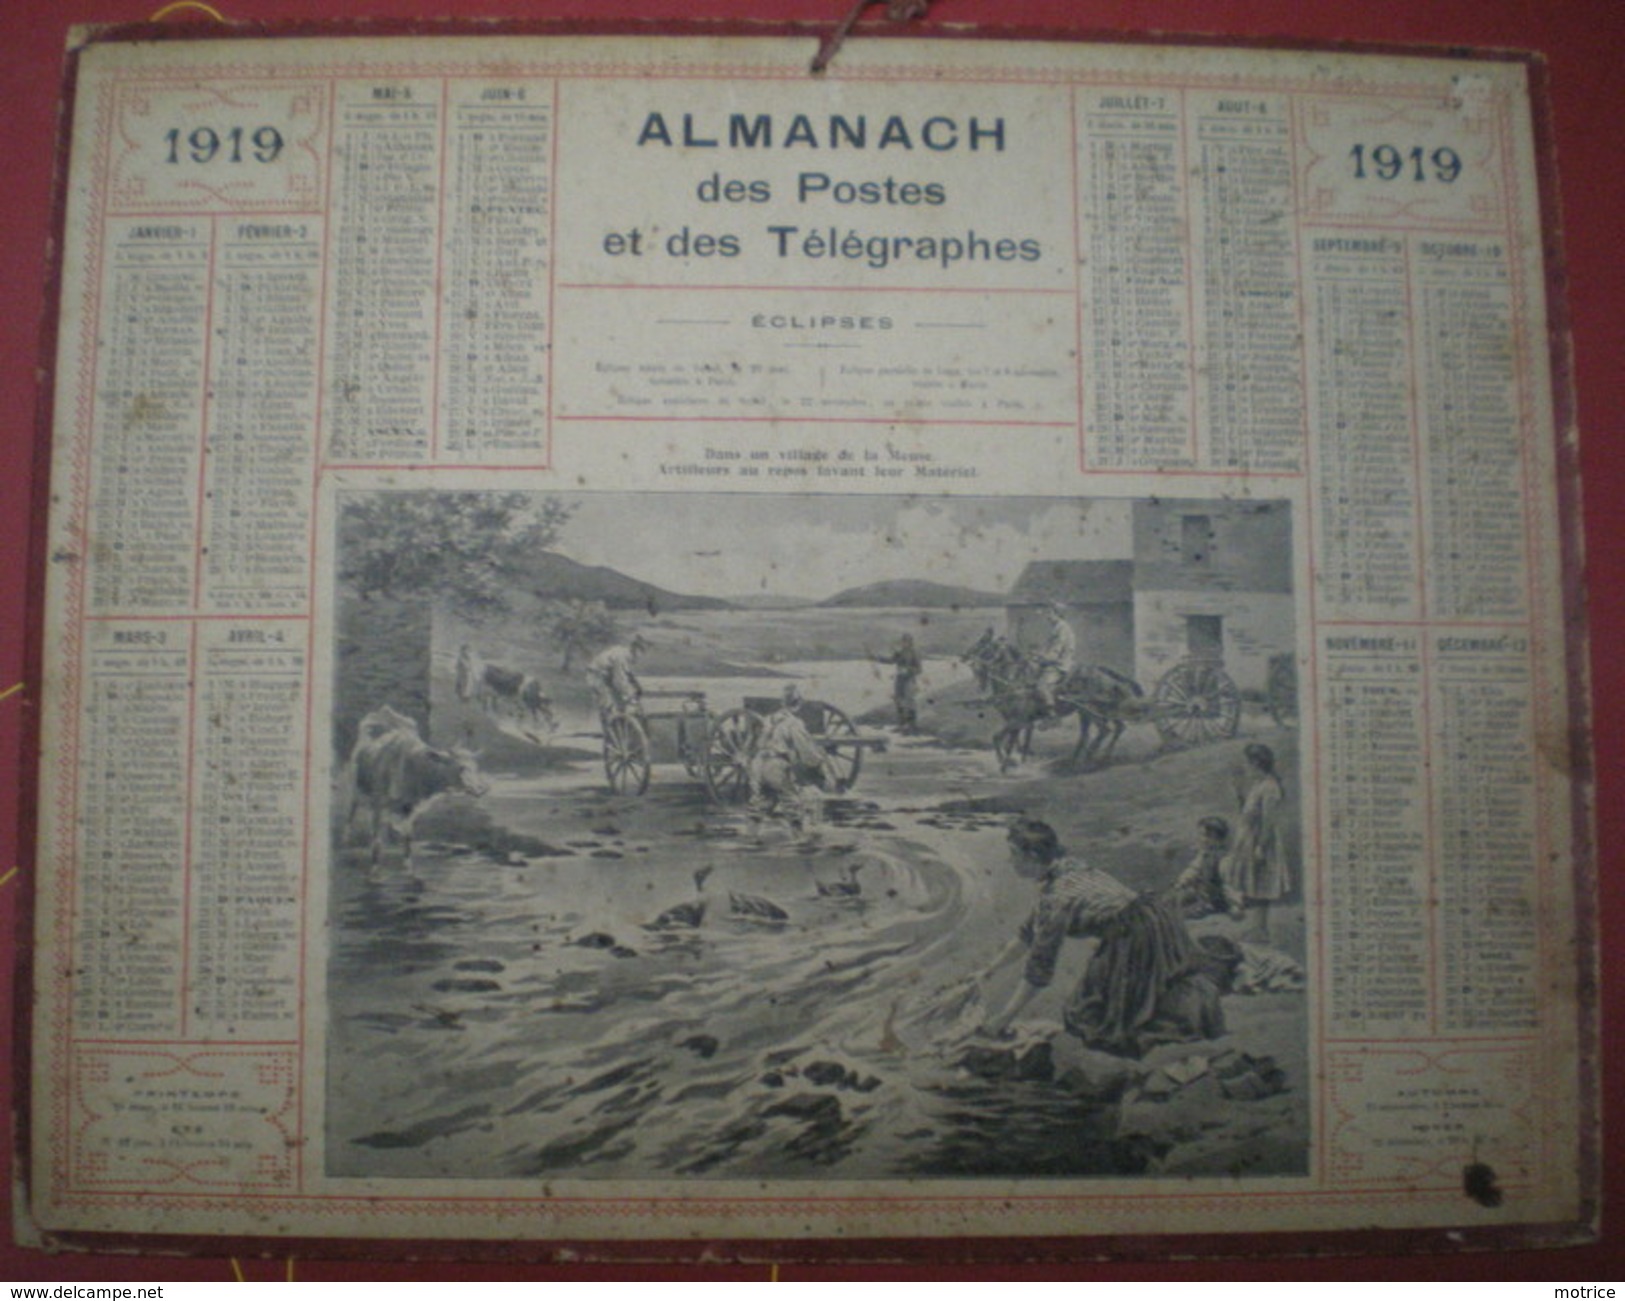 ALMANACH DES POSTES ET DES TÉLÉGRAPHES (Eclipses)  1919 - Dans Un Village De La Meuse, Artilleurs Au Repos. - Formato Grande : 1901-20